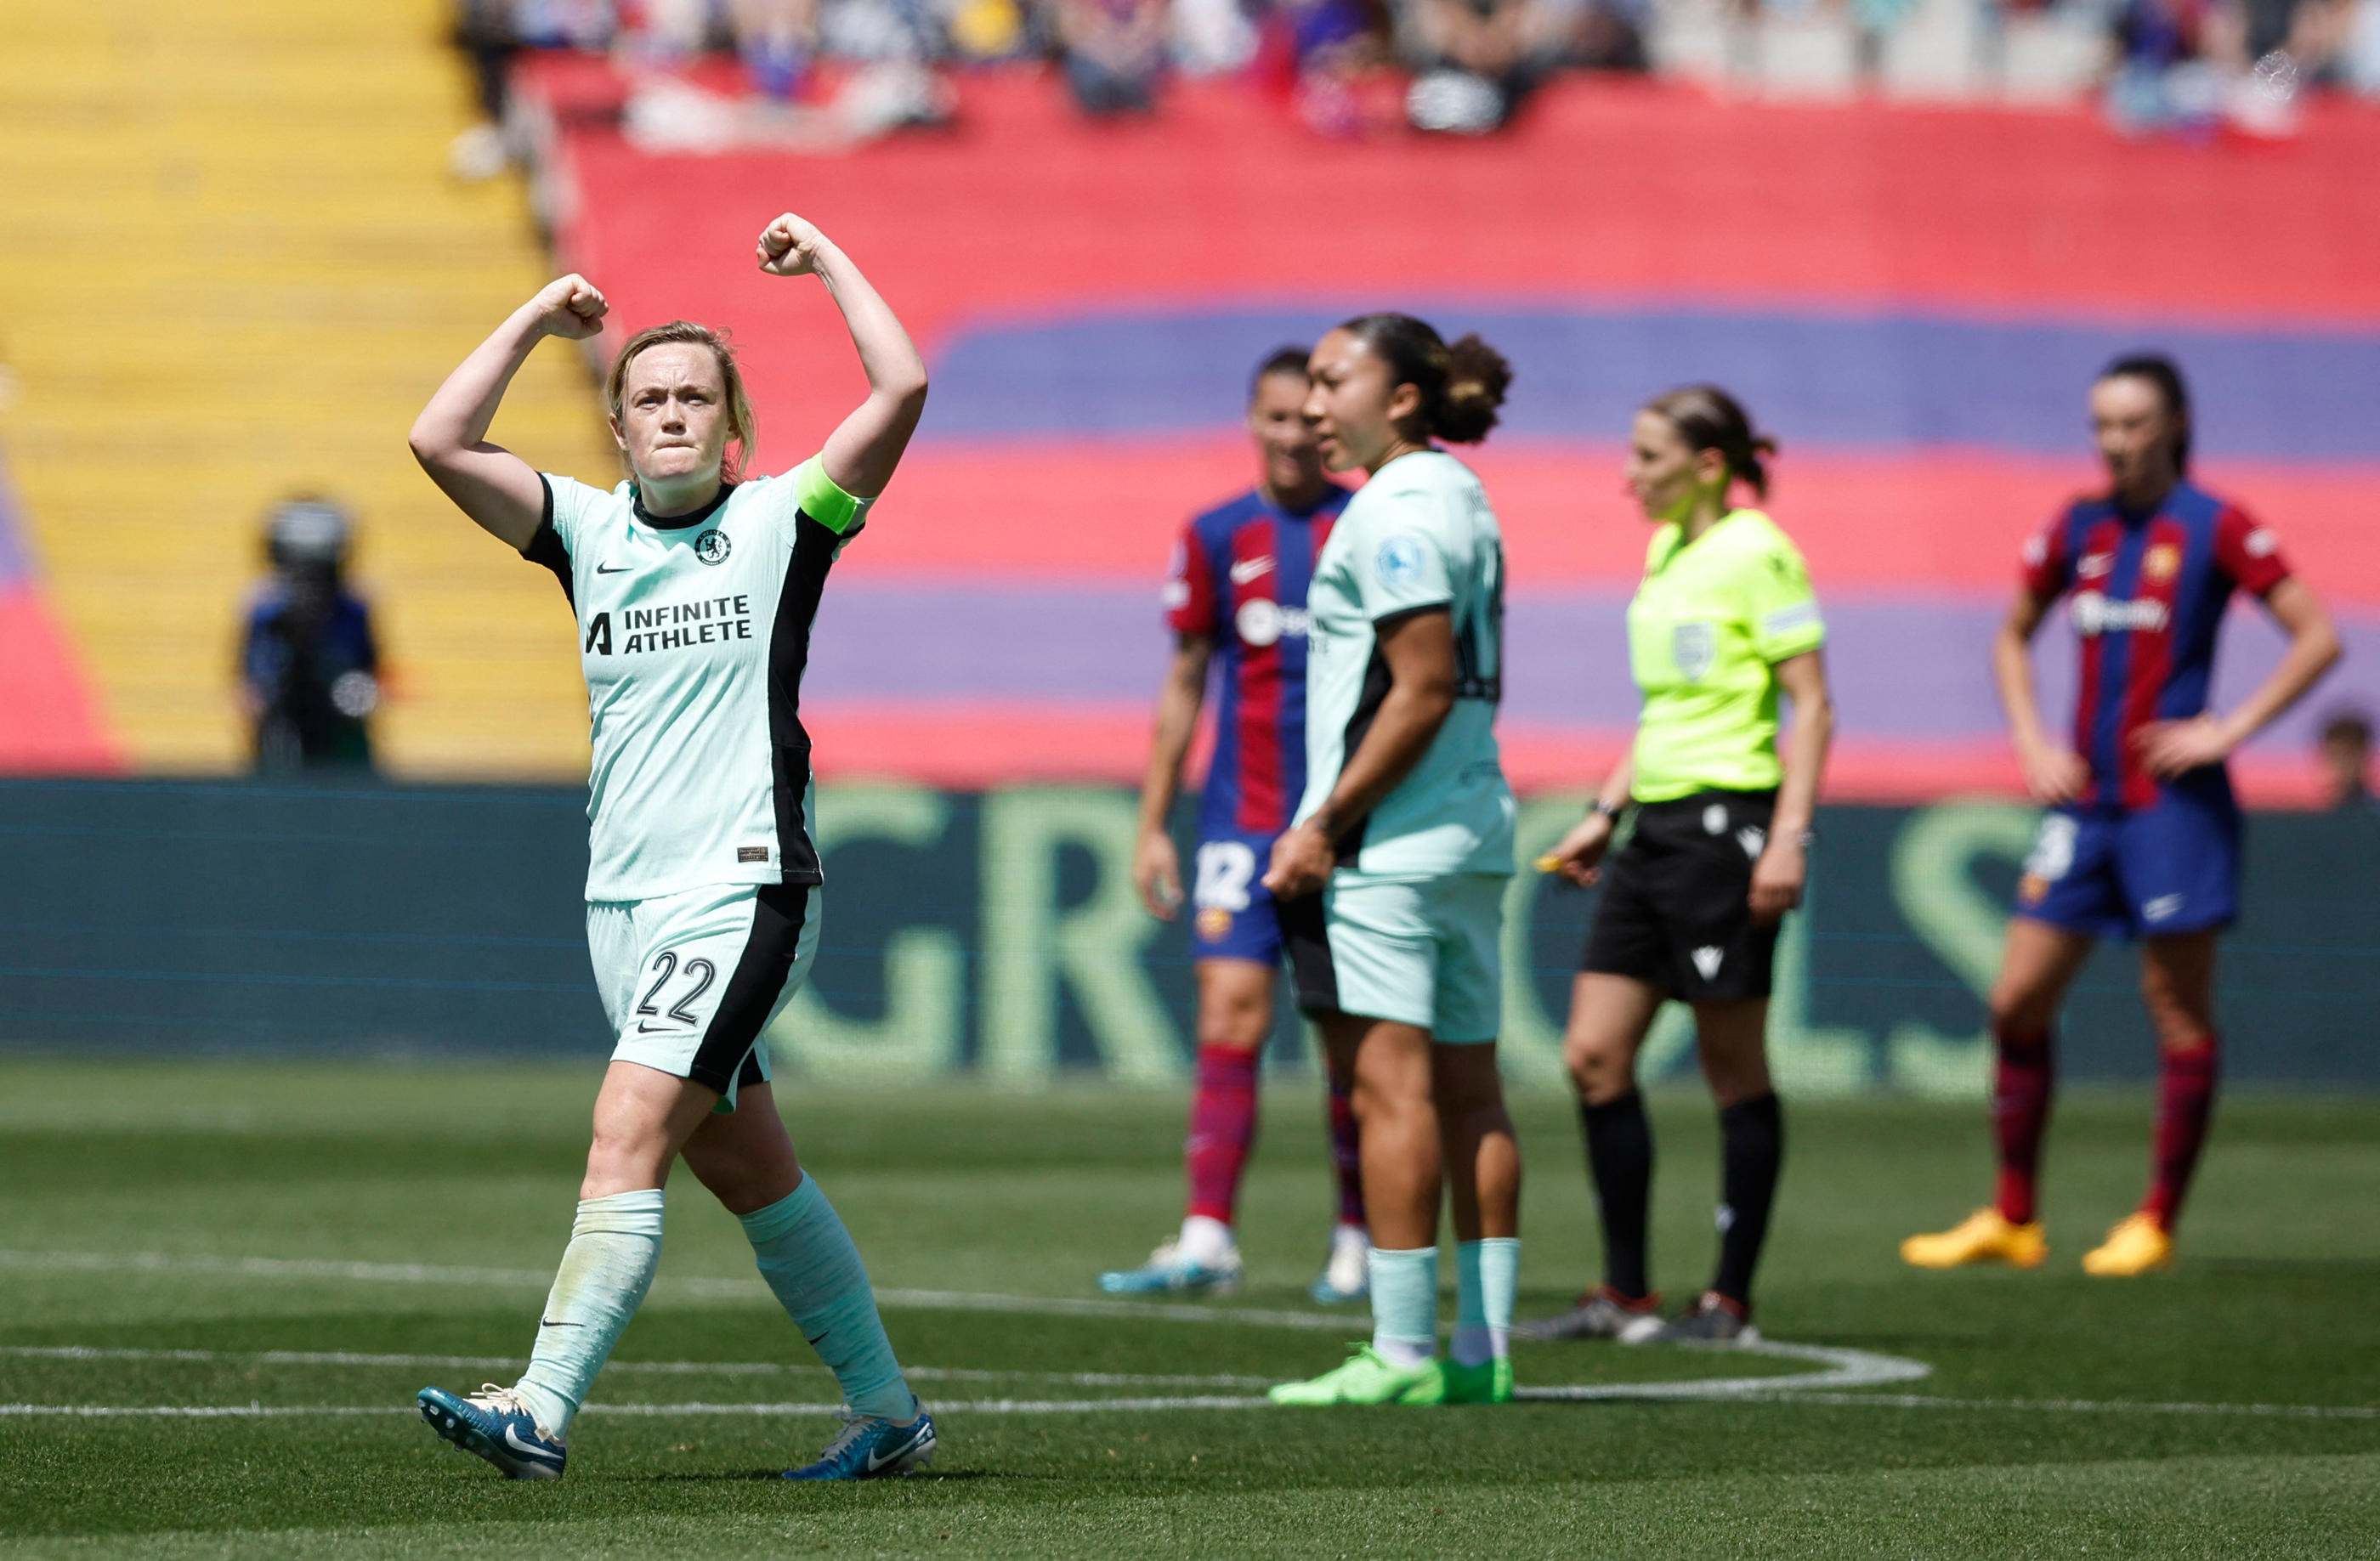 La capitaine de Chelsea Erin Cuthbert fête le but vainqueur contre le FC Barcelone ce samedi. Reuters/Albert Gea